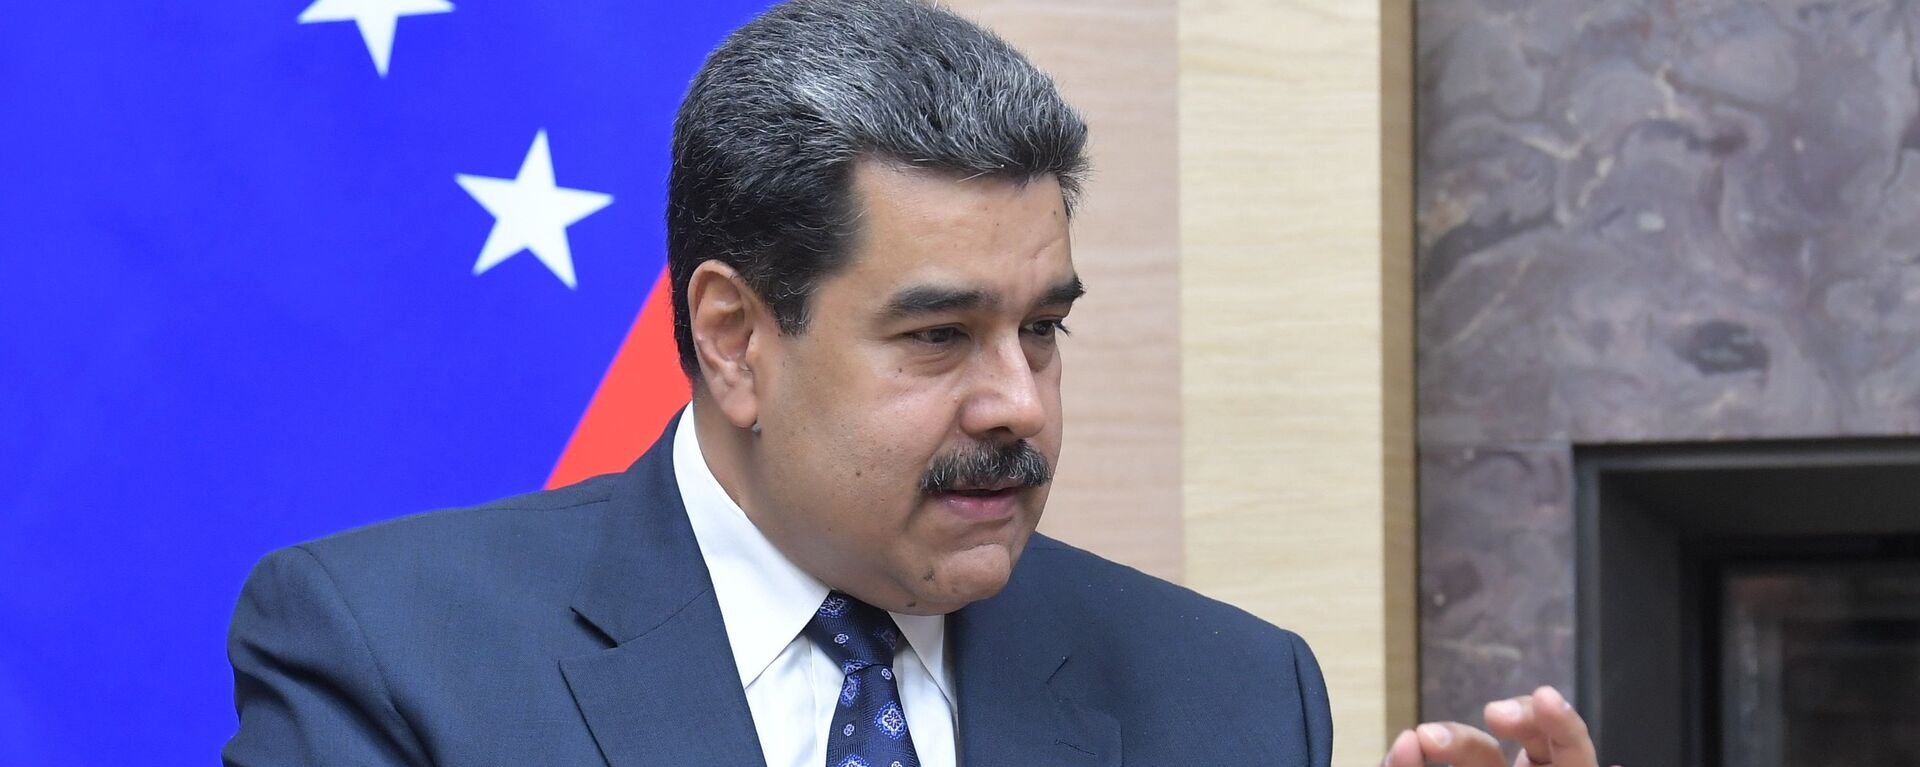 Nicolás Maduro, presidente de Venezuela - Sputnik Mundo, 1920, 21.02.2021